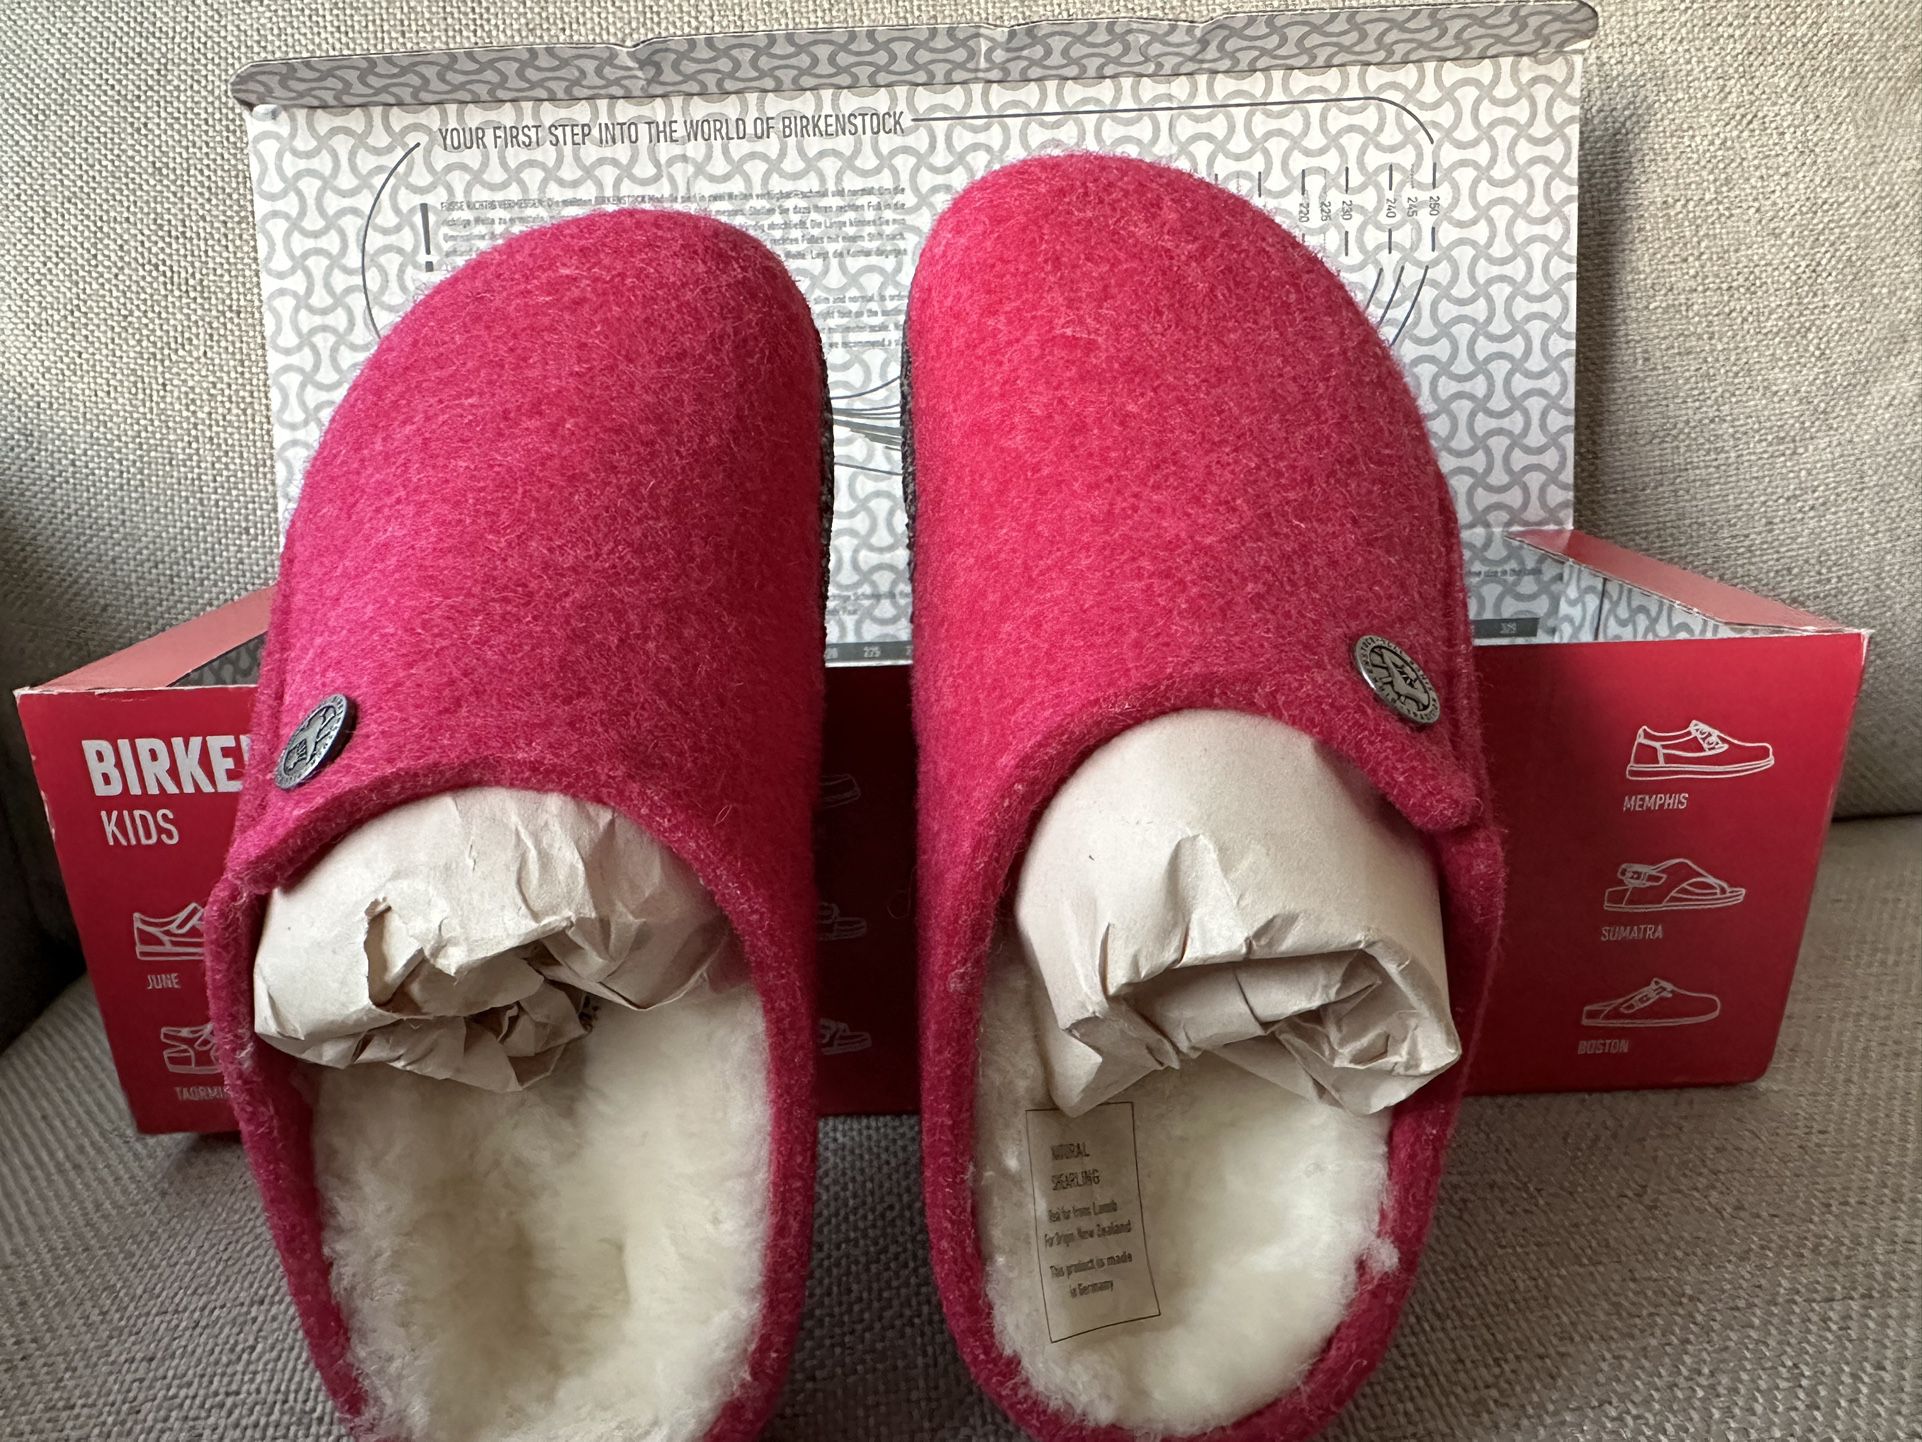 Birkenstock New w/o Box Zermatt Rivet Kids Berry Pink Wool Felt Narrow Sandals